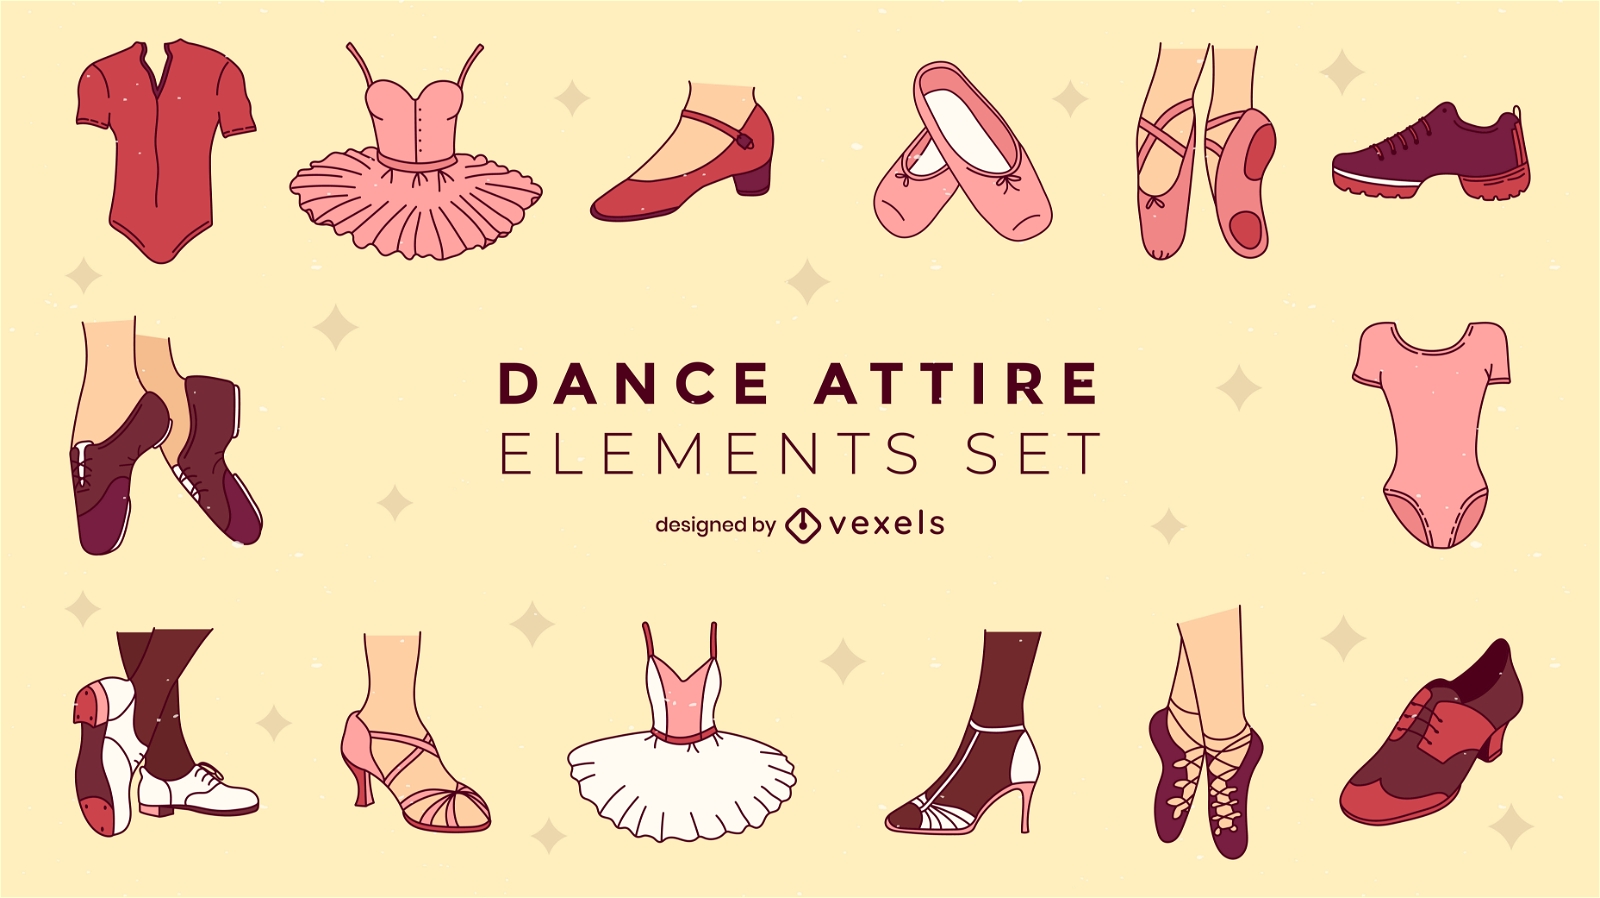 Dance attire elements set